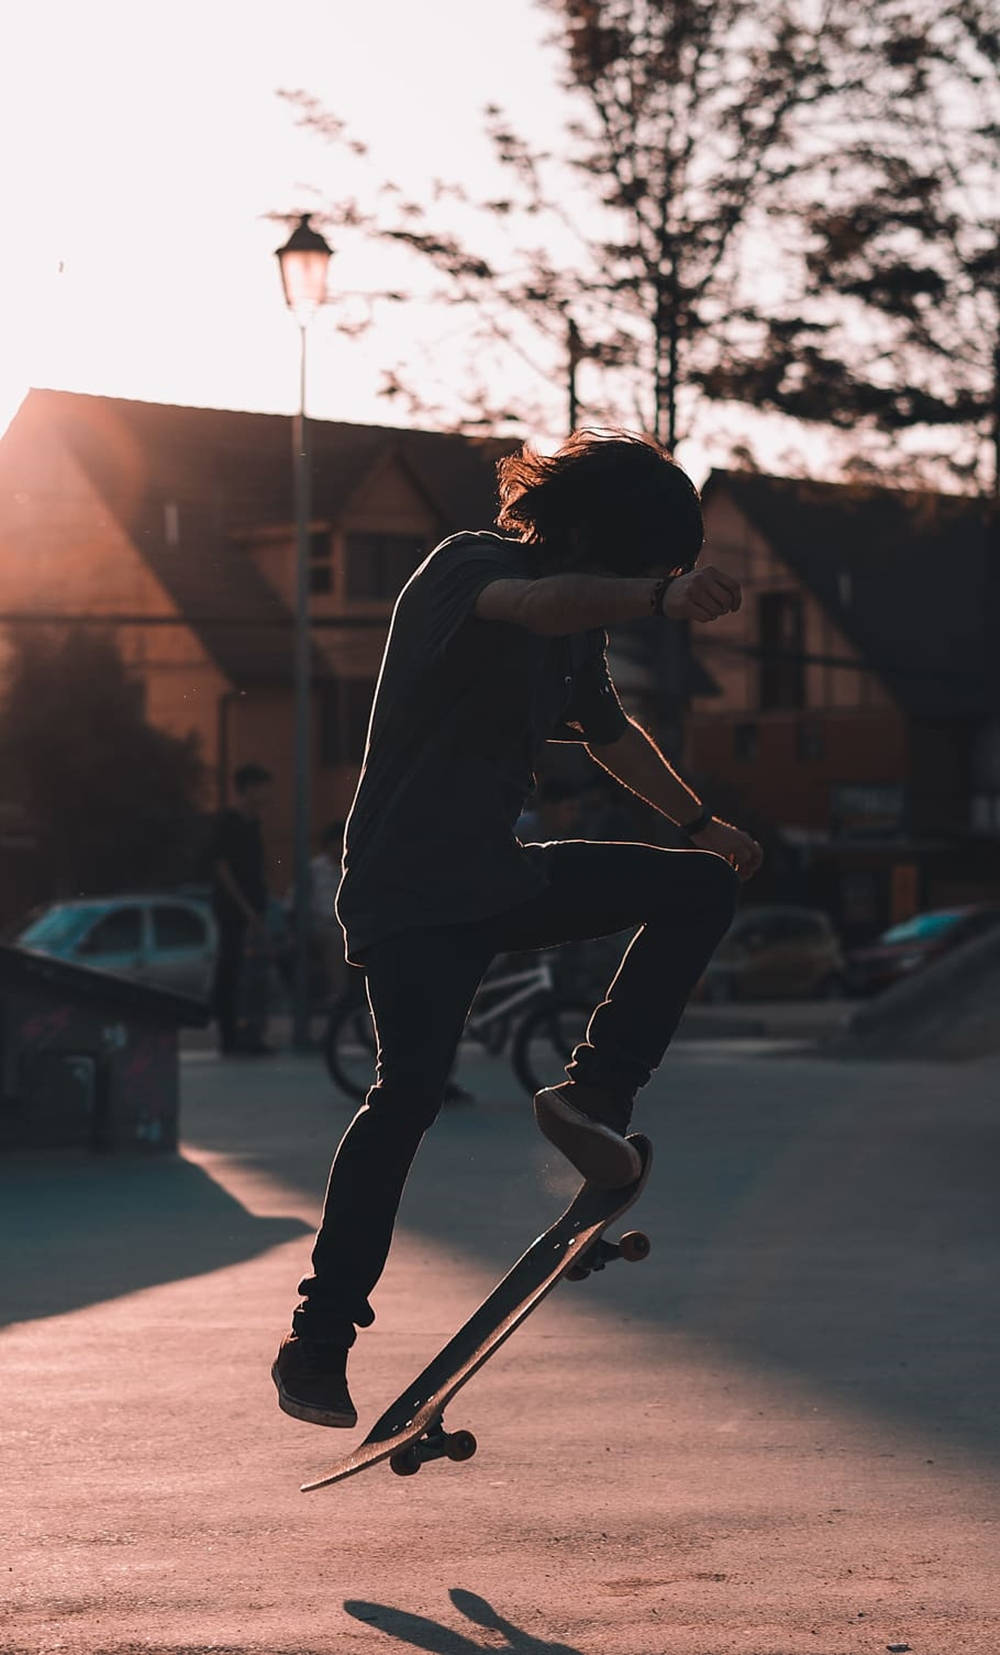 Aesthetic Skateboard Black Man Background